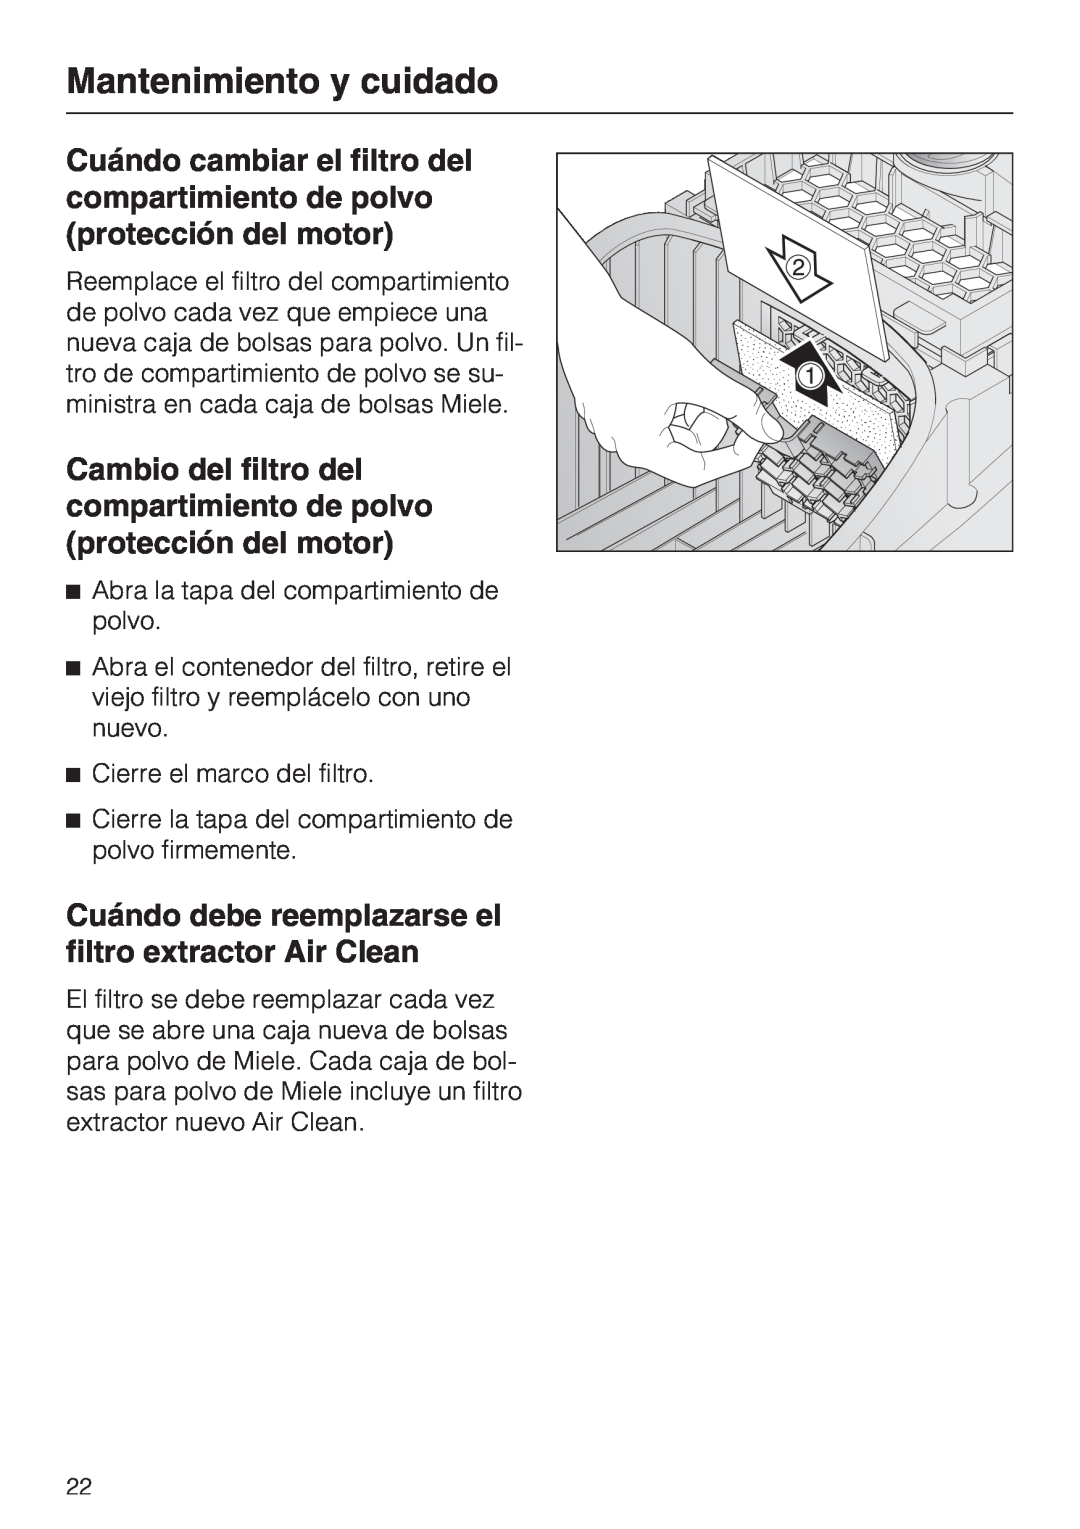 Miele S 2001 manual Mantenimiento y cuidado, Abra la tapa del compartimiento de polvo 